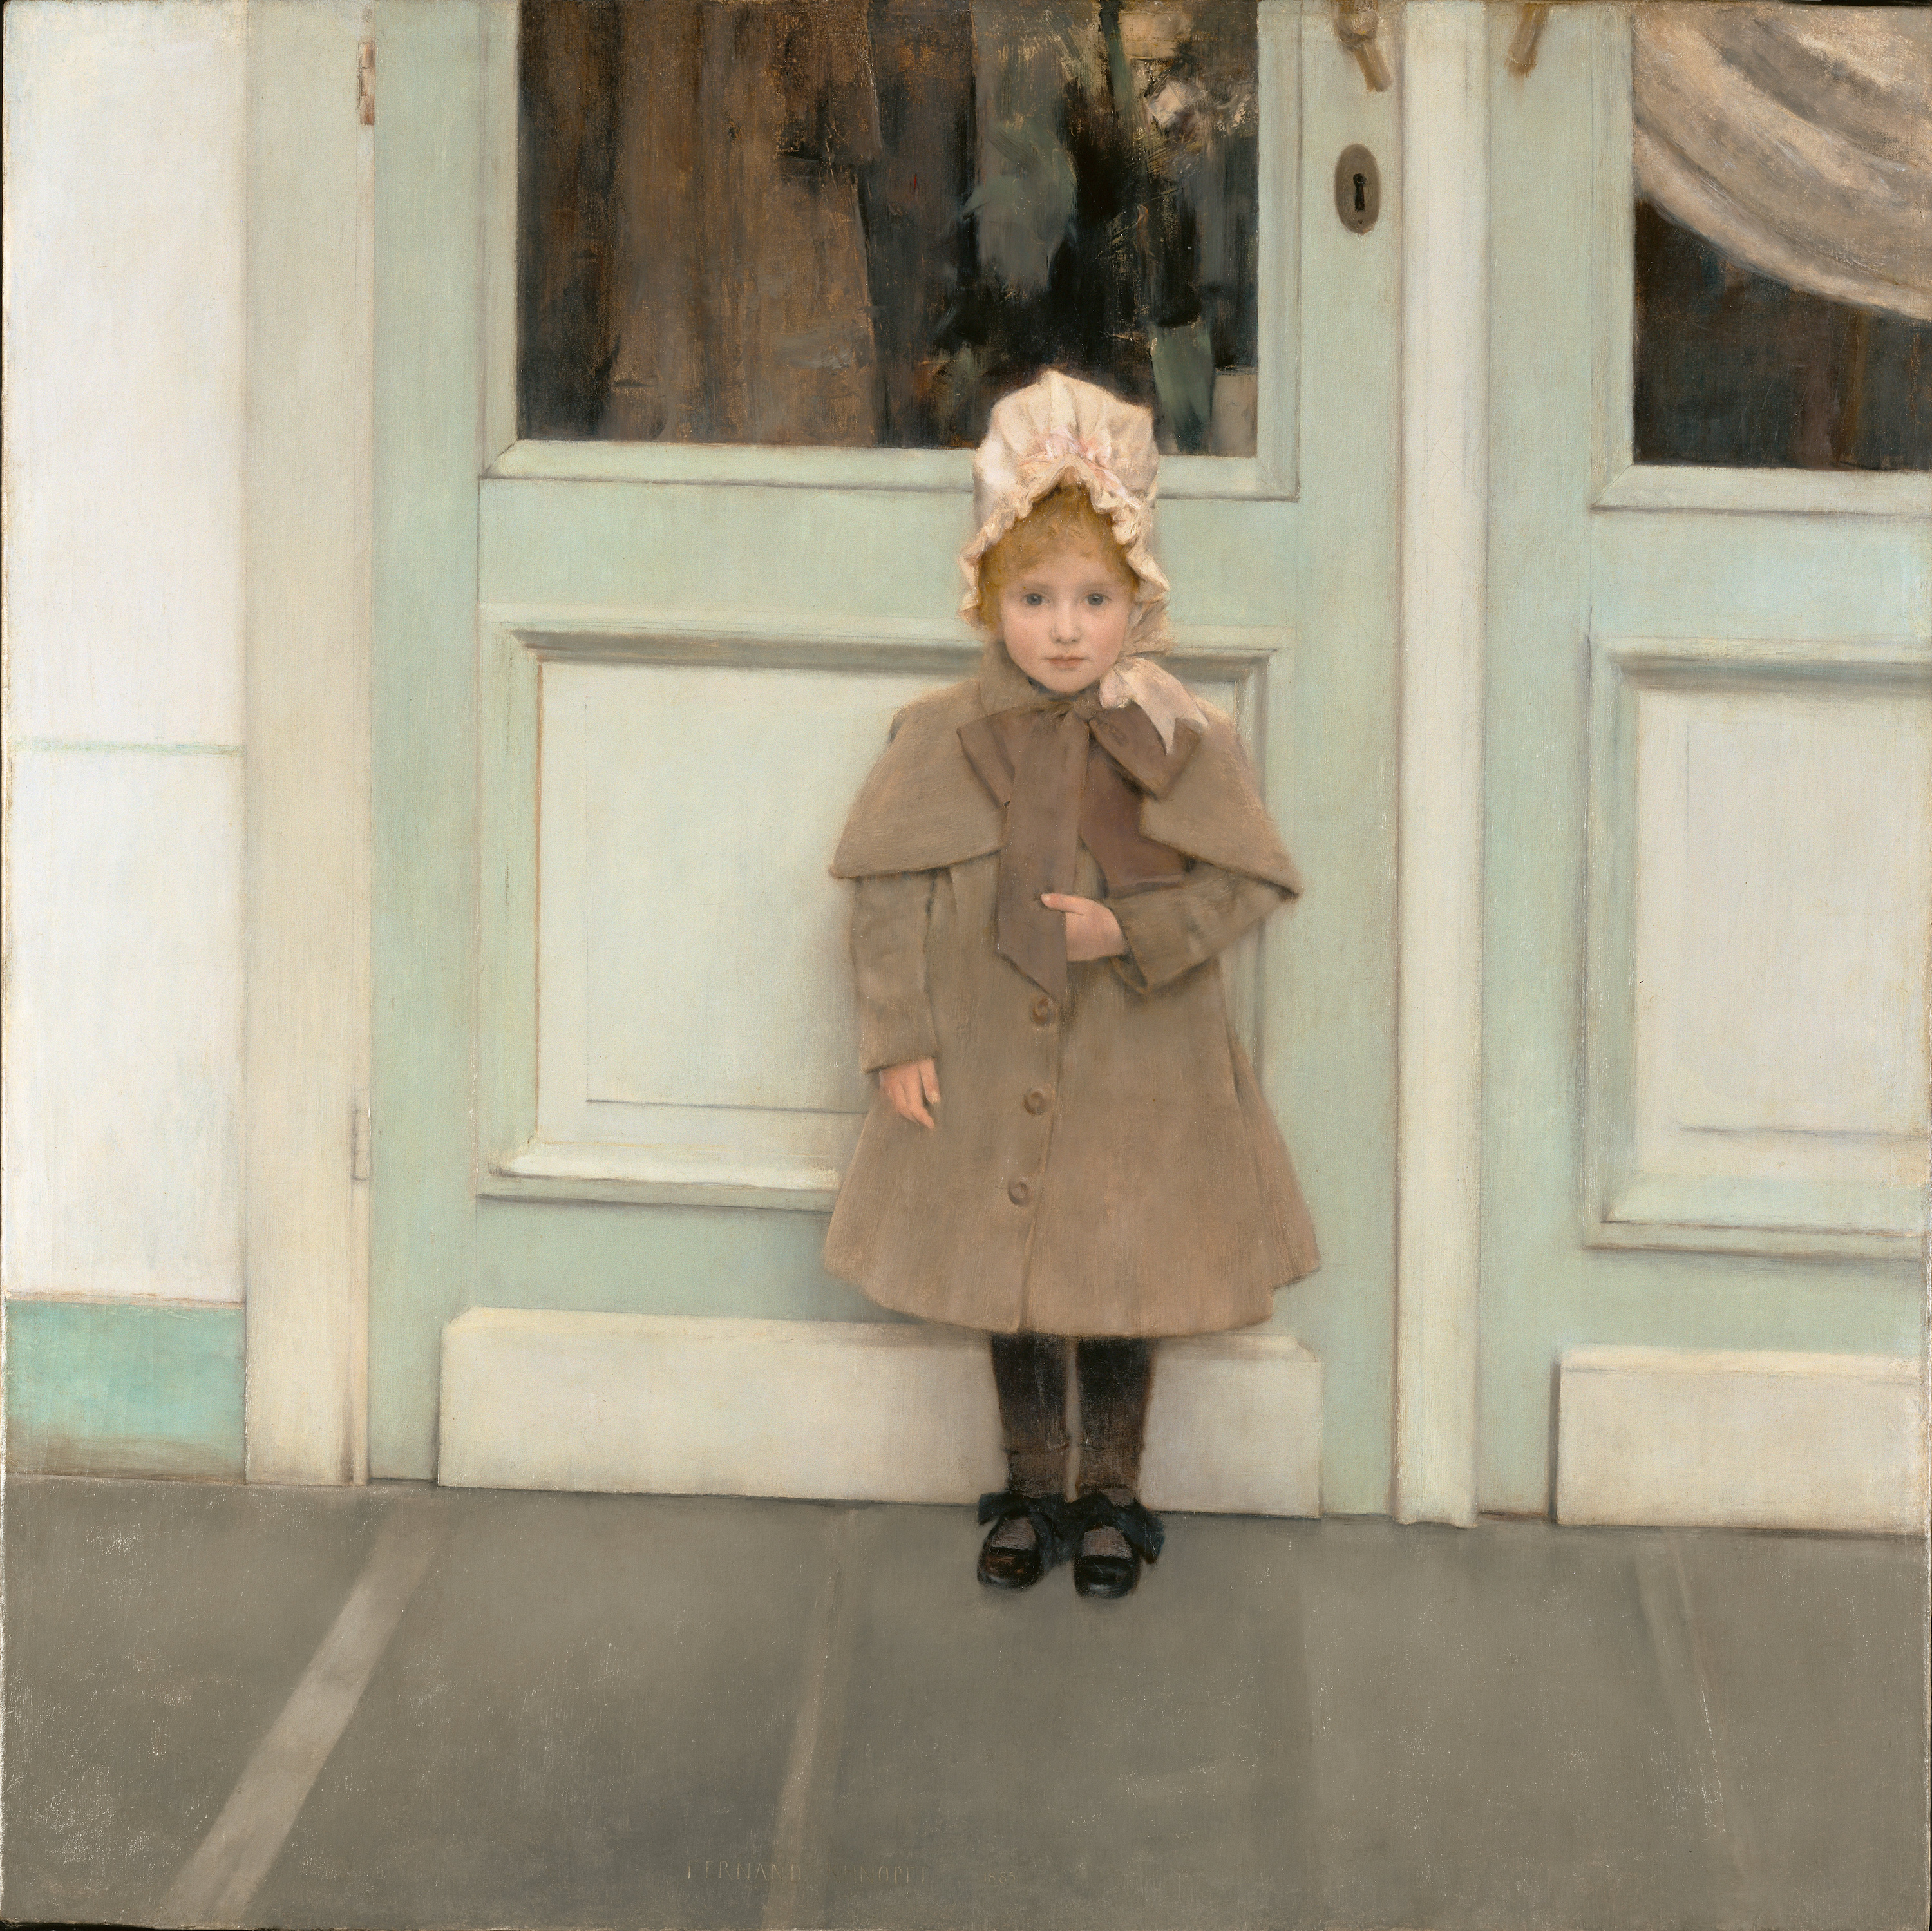 珍妮·可菲尔 by 弗尔南· 科诺普夫 - 1885 - 80 x 80 cm 保罗·盖蒂博物馆